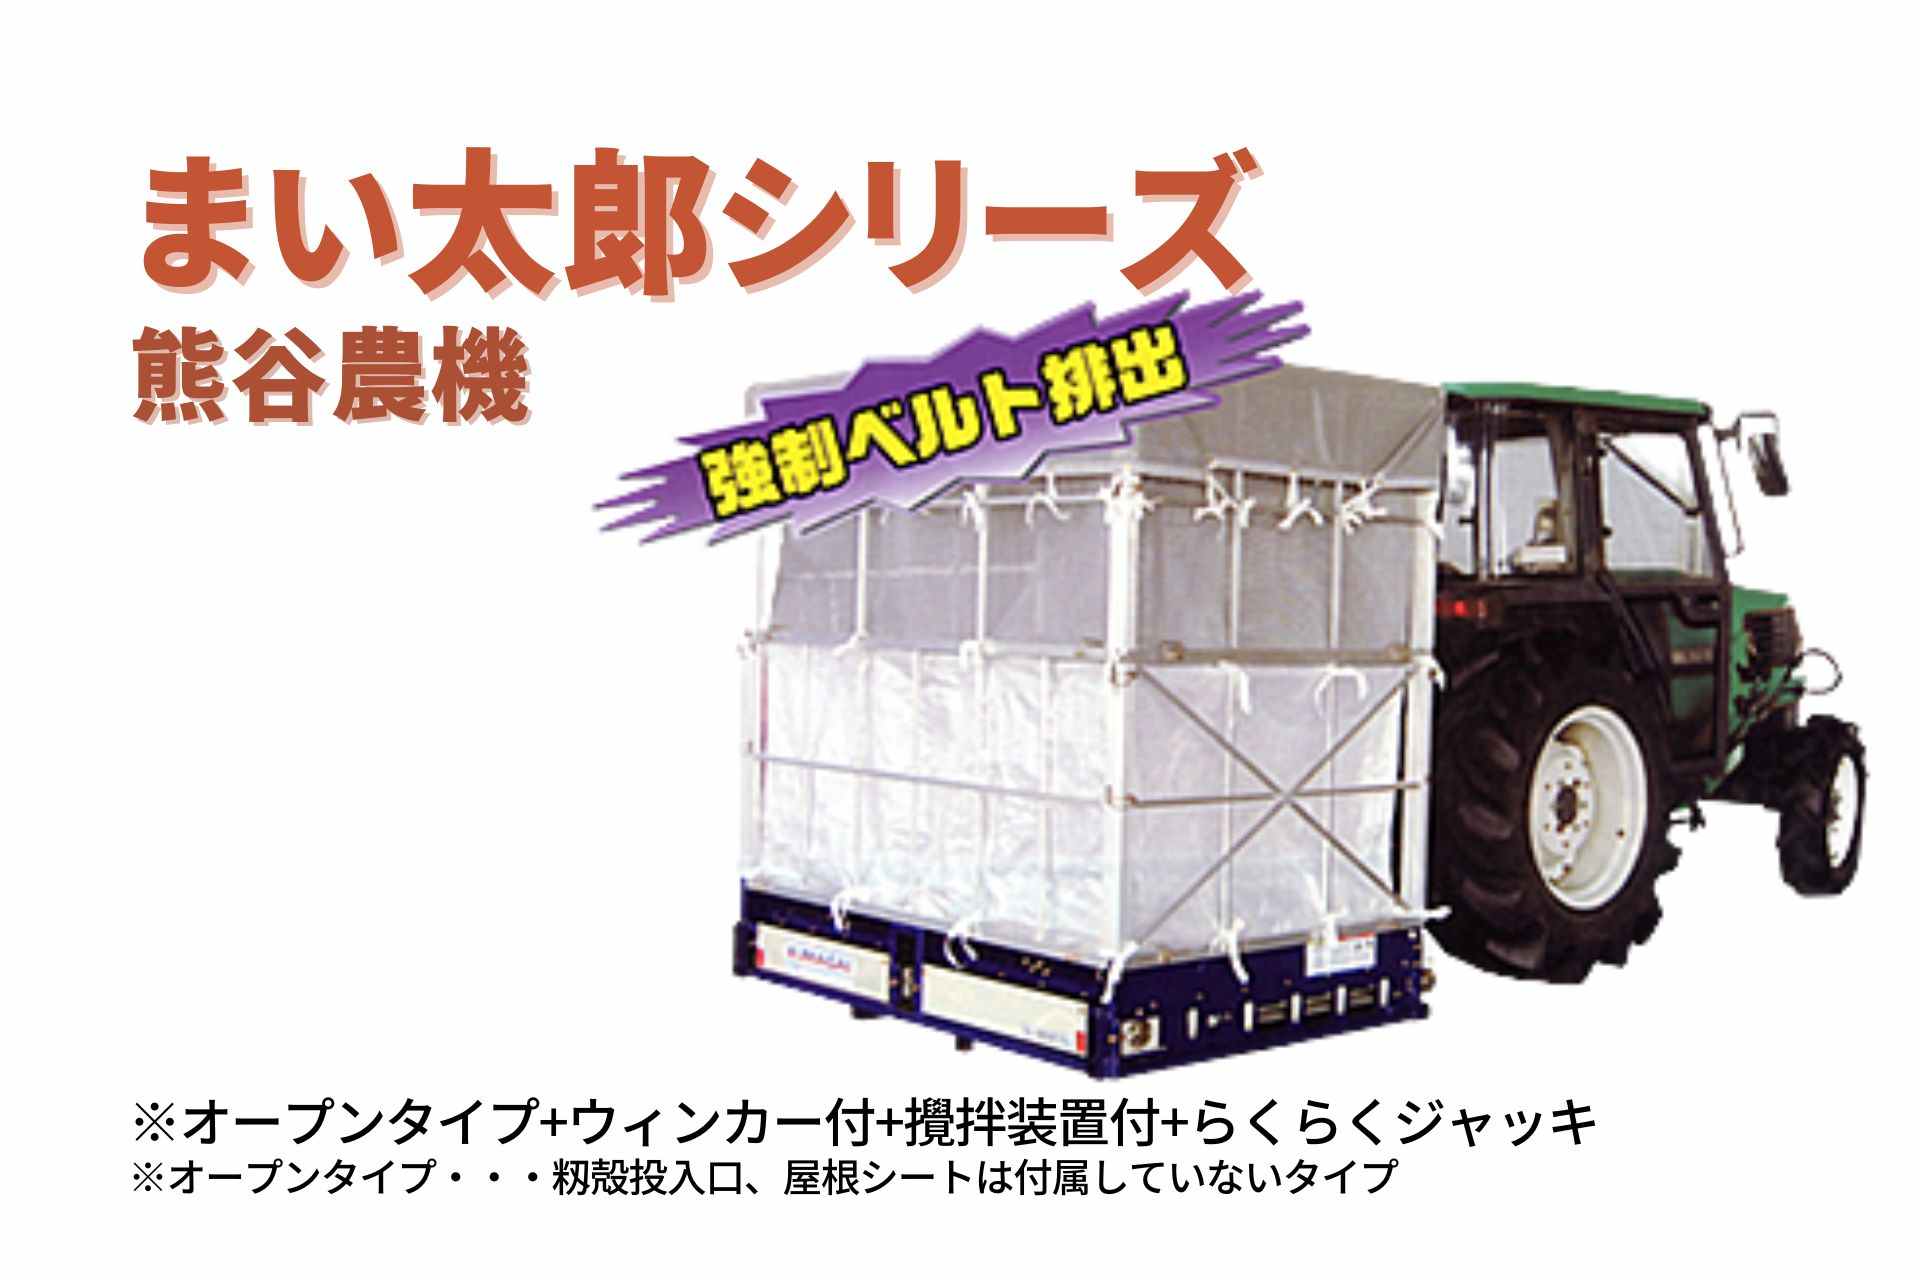 籾殻散布機 まい太郎 オープンタイプ ウィンカー付 攪拌装置付 らくらくジャッキ MTA-40RJOW(L) 熊谷農機